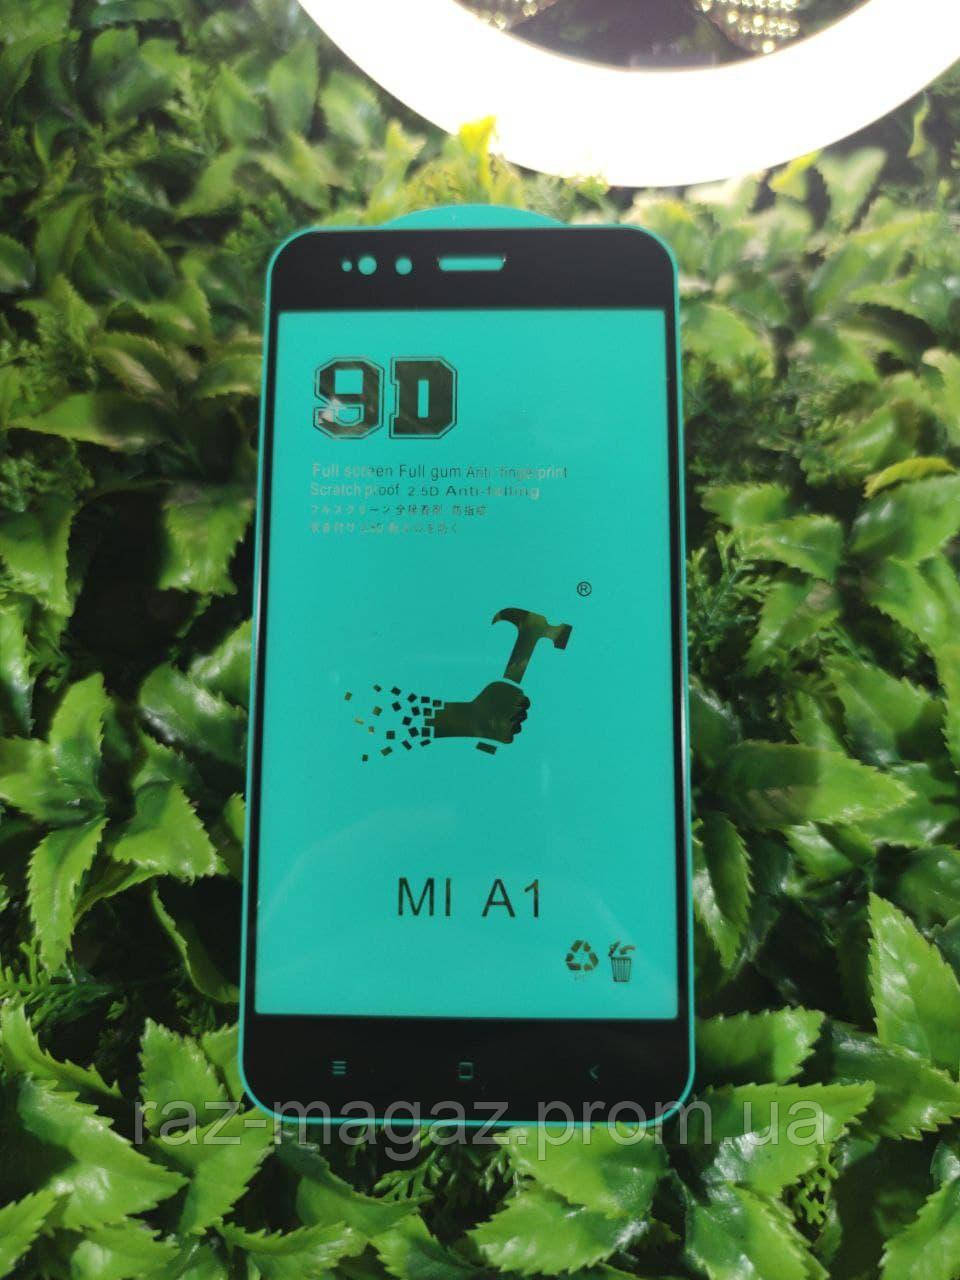 

Защитное стекло 9D. 9H Полная оклейка для Телефона Смартфона Xiaomi Mi 5X/A1 Black. Full Glue, Черный